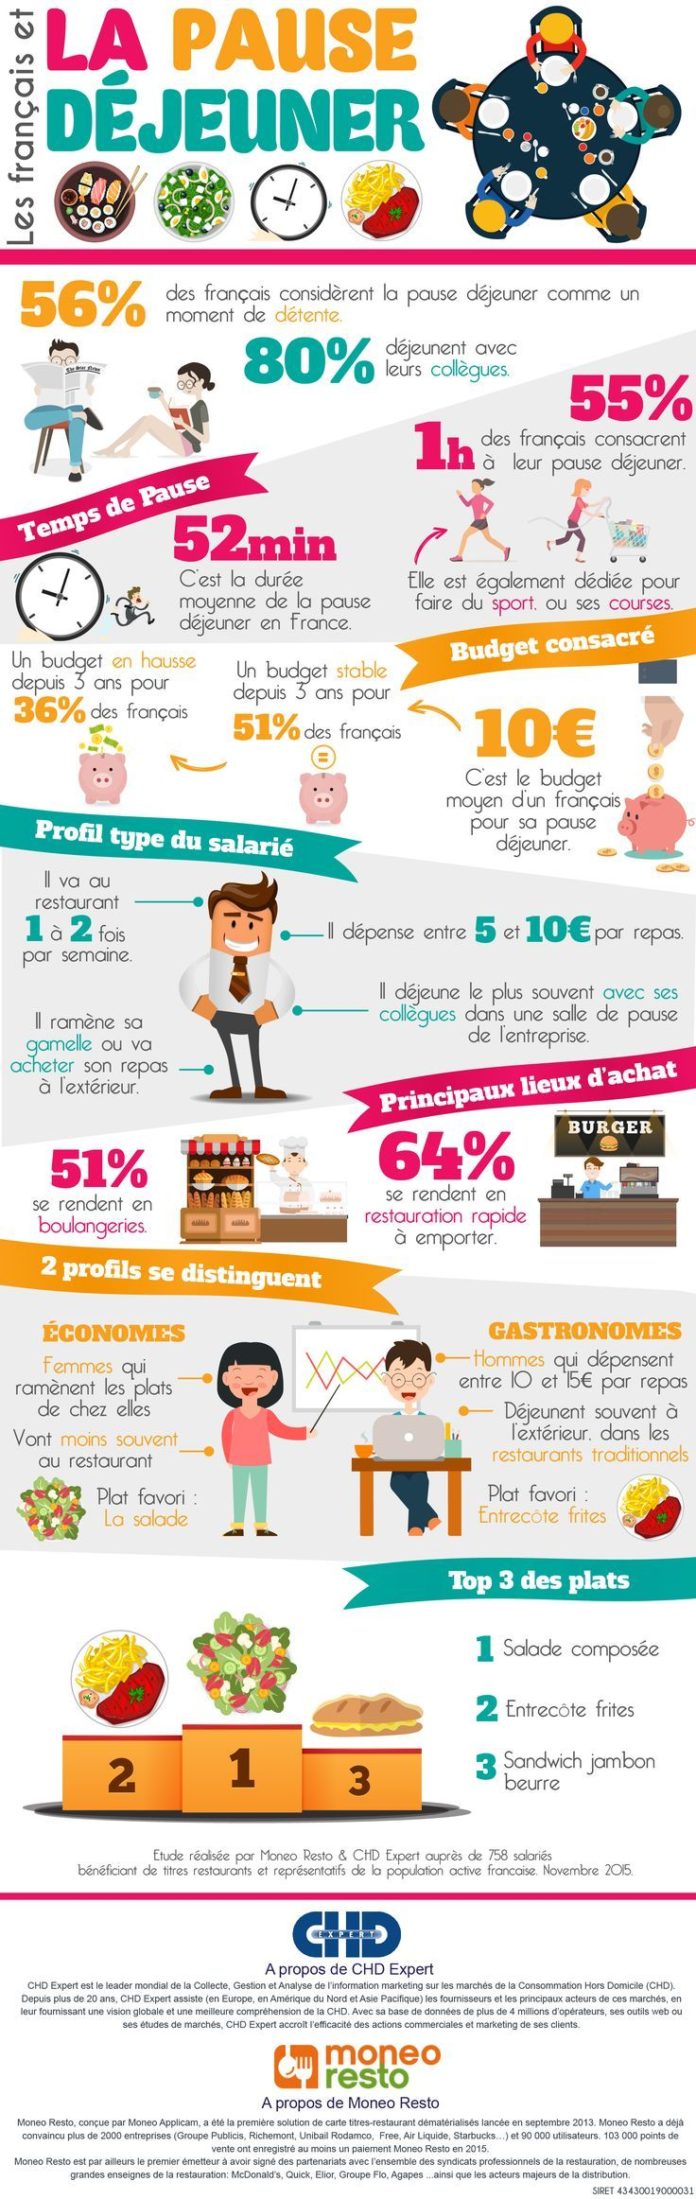 Educational infographic : Infographie Les francais et la pause dejeuner ...